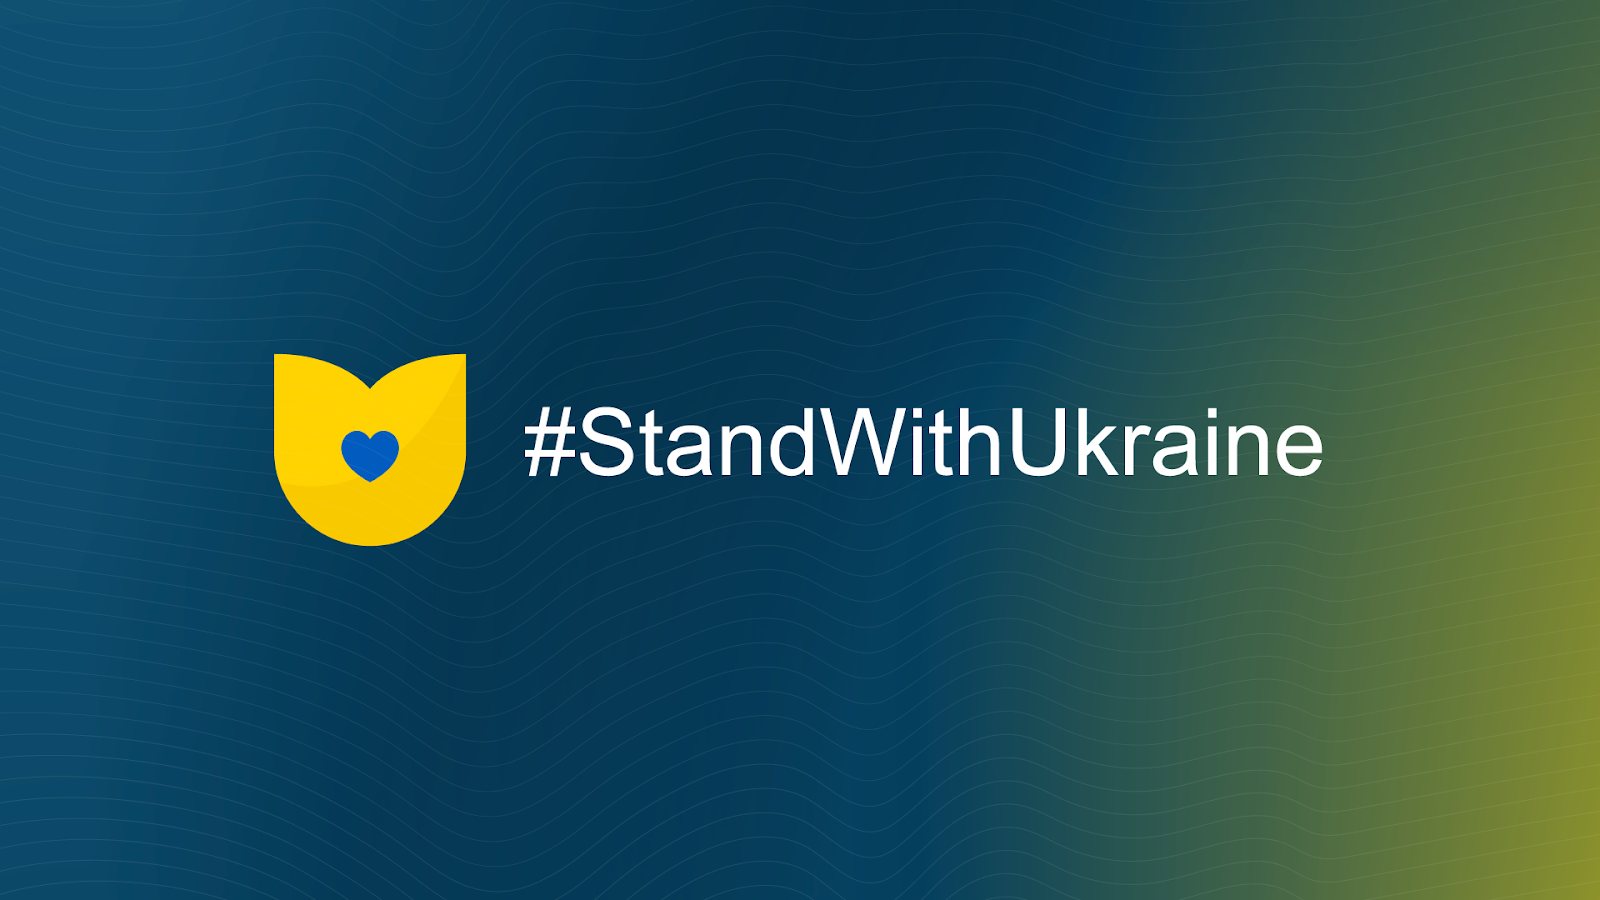 Привлечение международного сообщества к поддержке Украины во время войны крайне важно для победы.